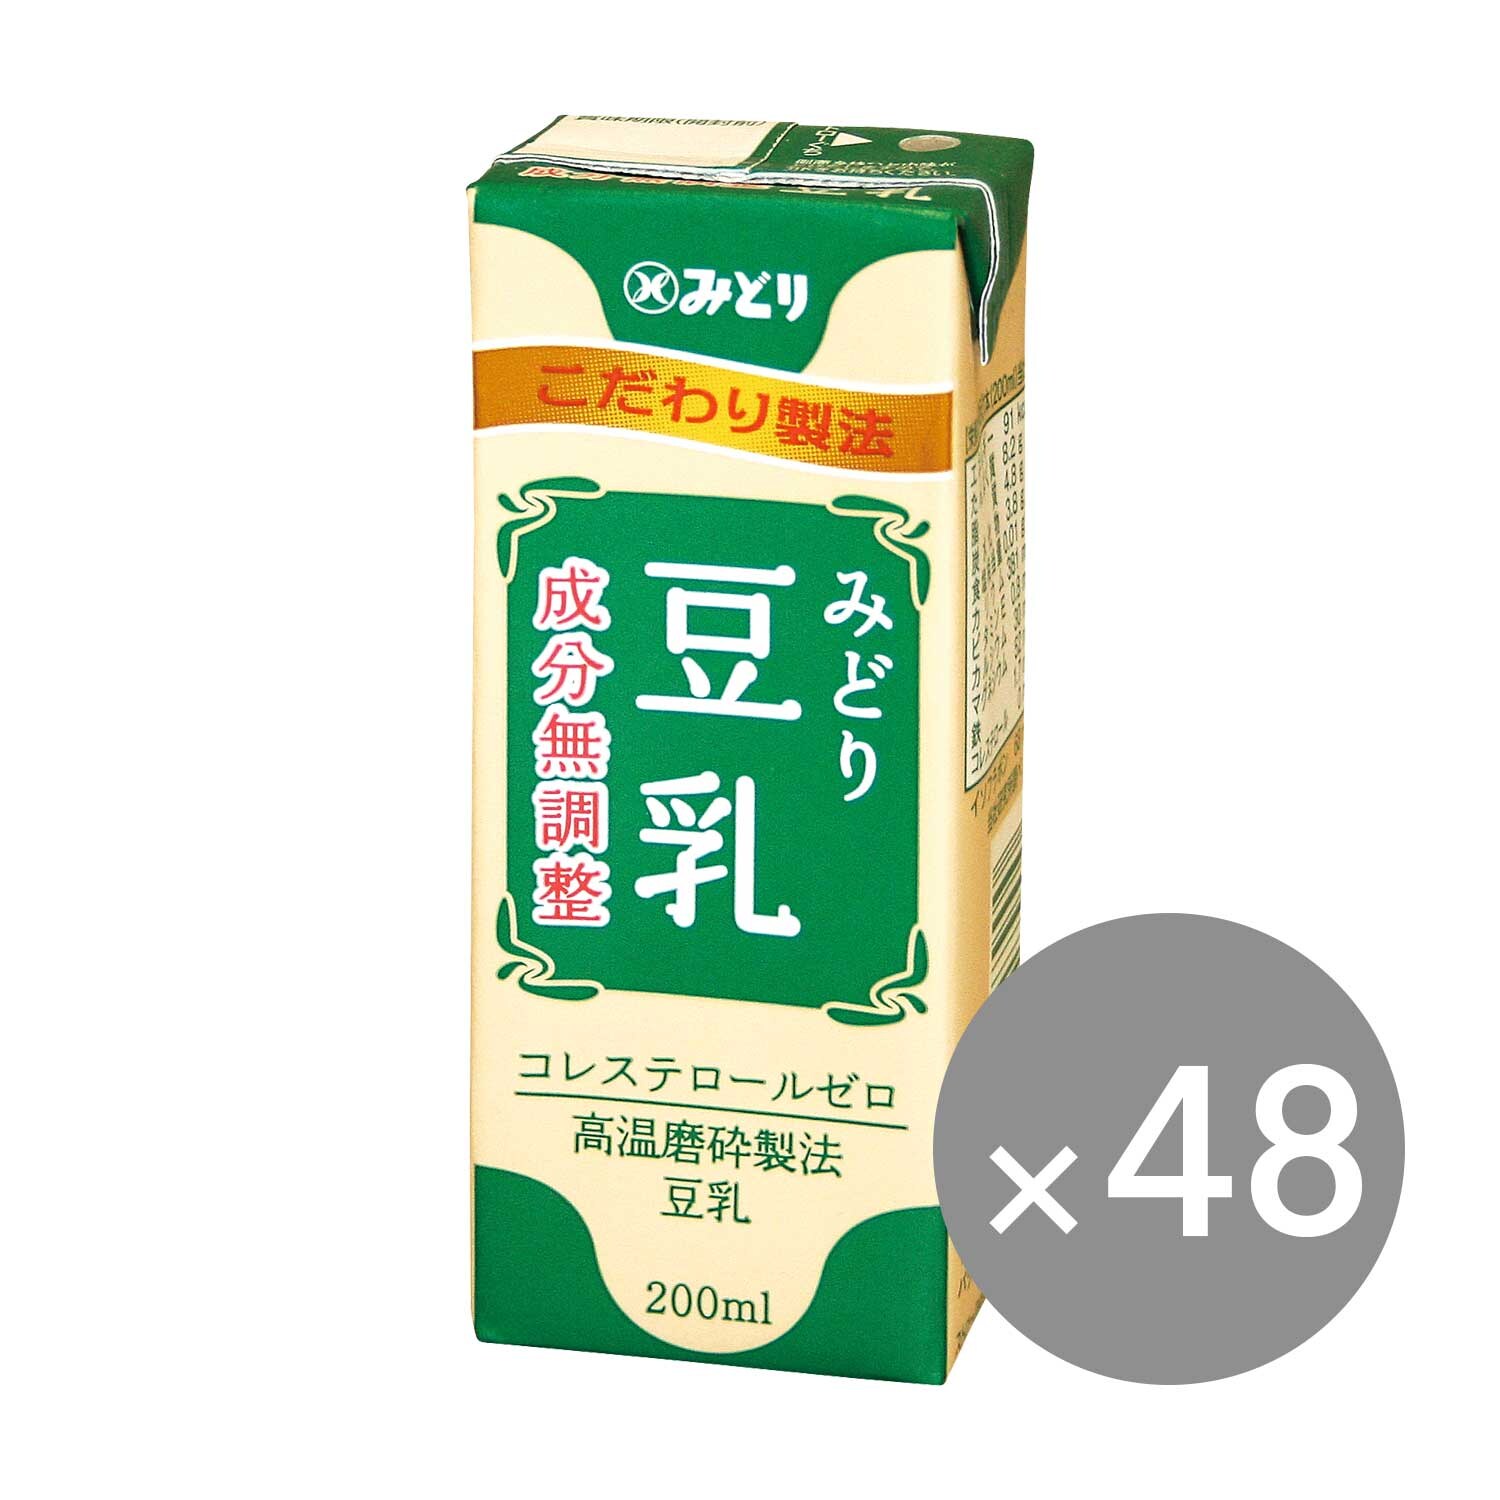 【九州乳業】みどり 豆乳 成分無調整(200ml紙パック)48本/72本